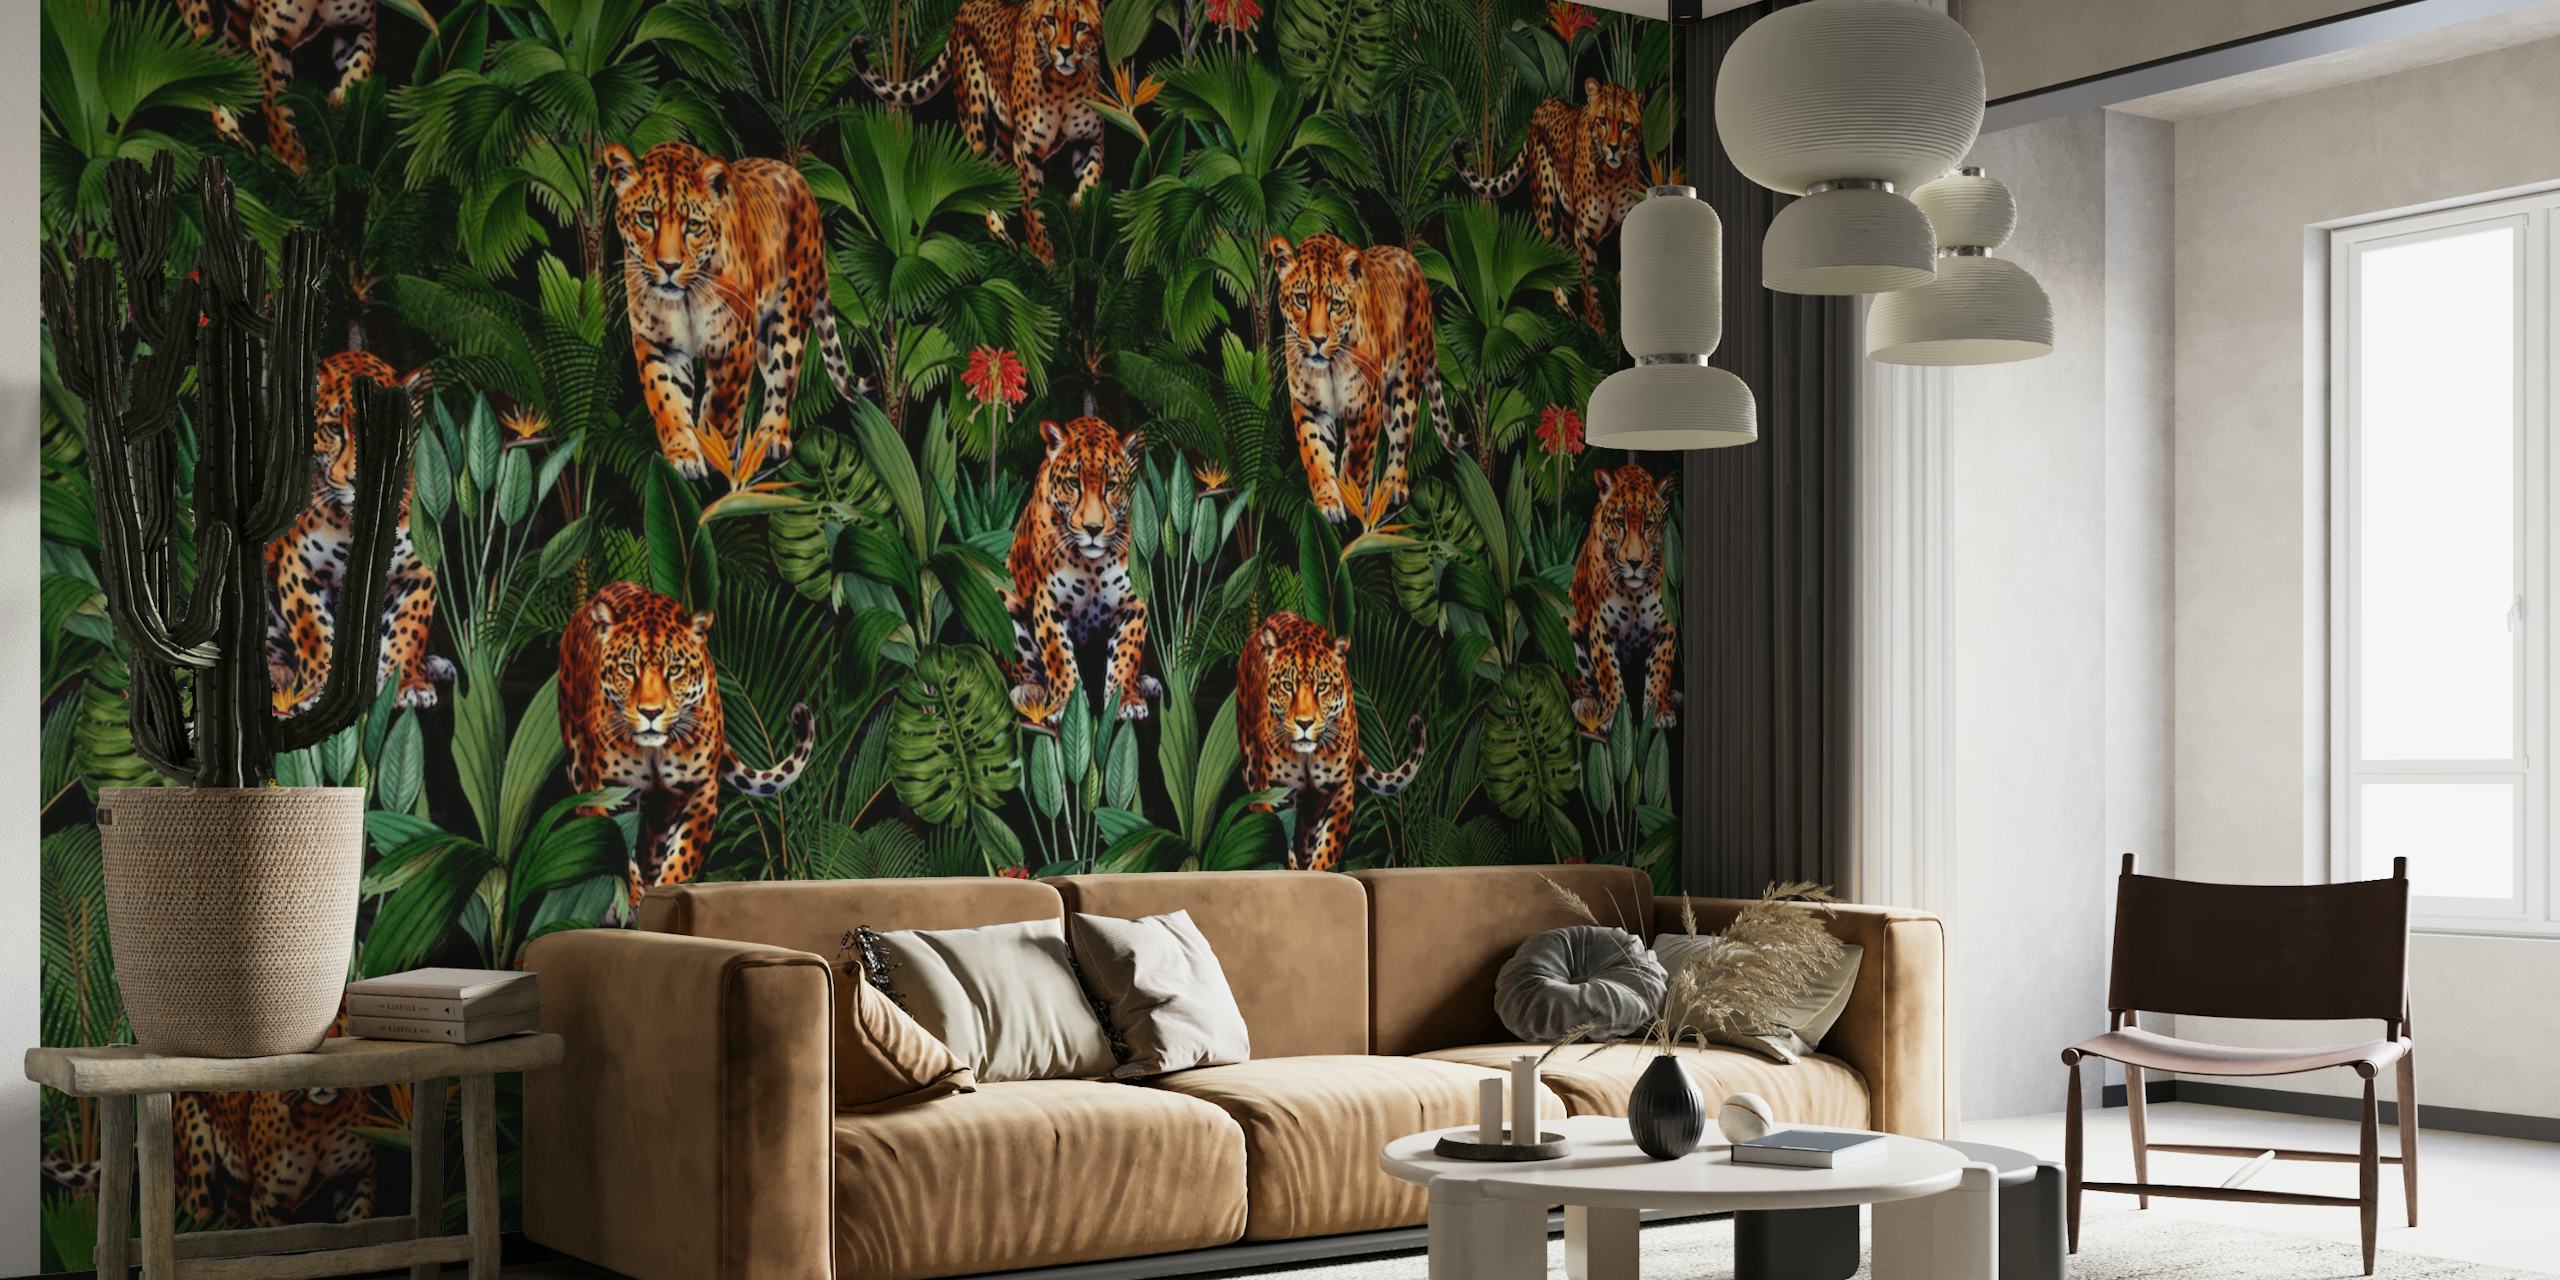 Ein üppiges Dschungel-Wandbild mit Tigern, die in einer nächtlichen Umgebung zwischen grünem Laub versteckt sind.